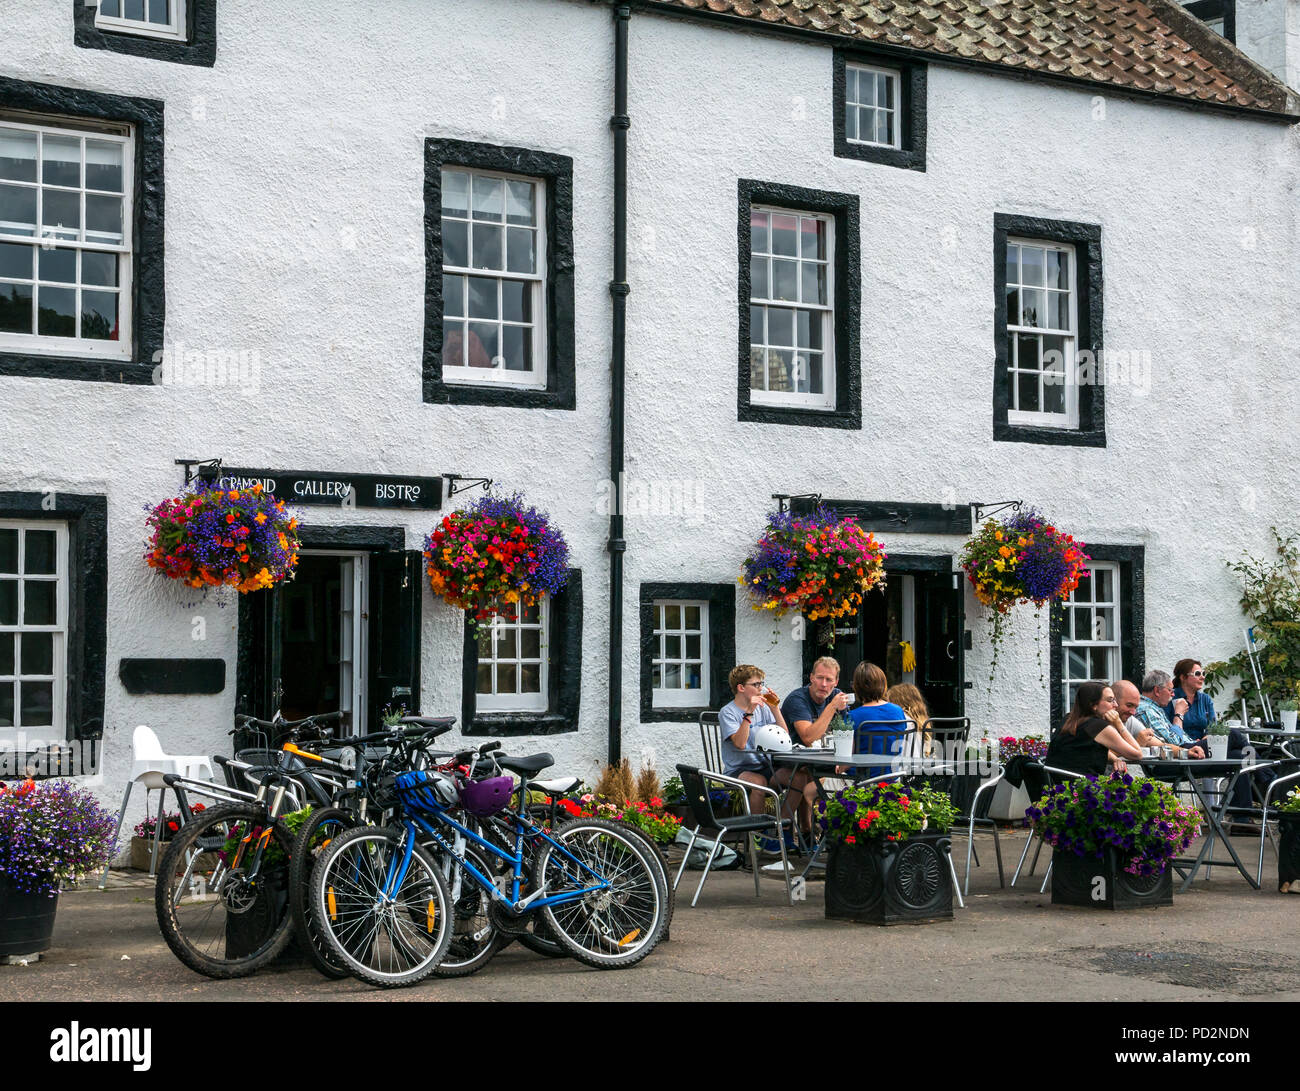 Le persone sedute a tavoli all aperto con le biciclette parcheggiate, Galleria Cramond Bistro, Cramond, Edimburgo, Scozia con cesti di fiori in estate Foto Stock